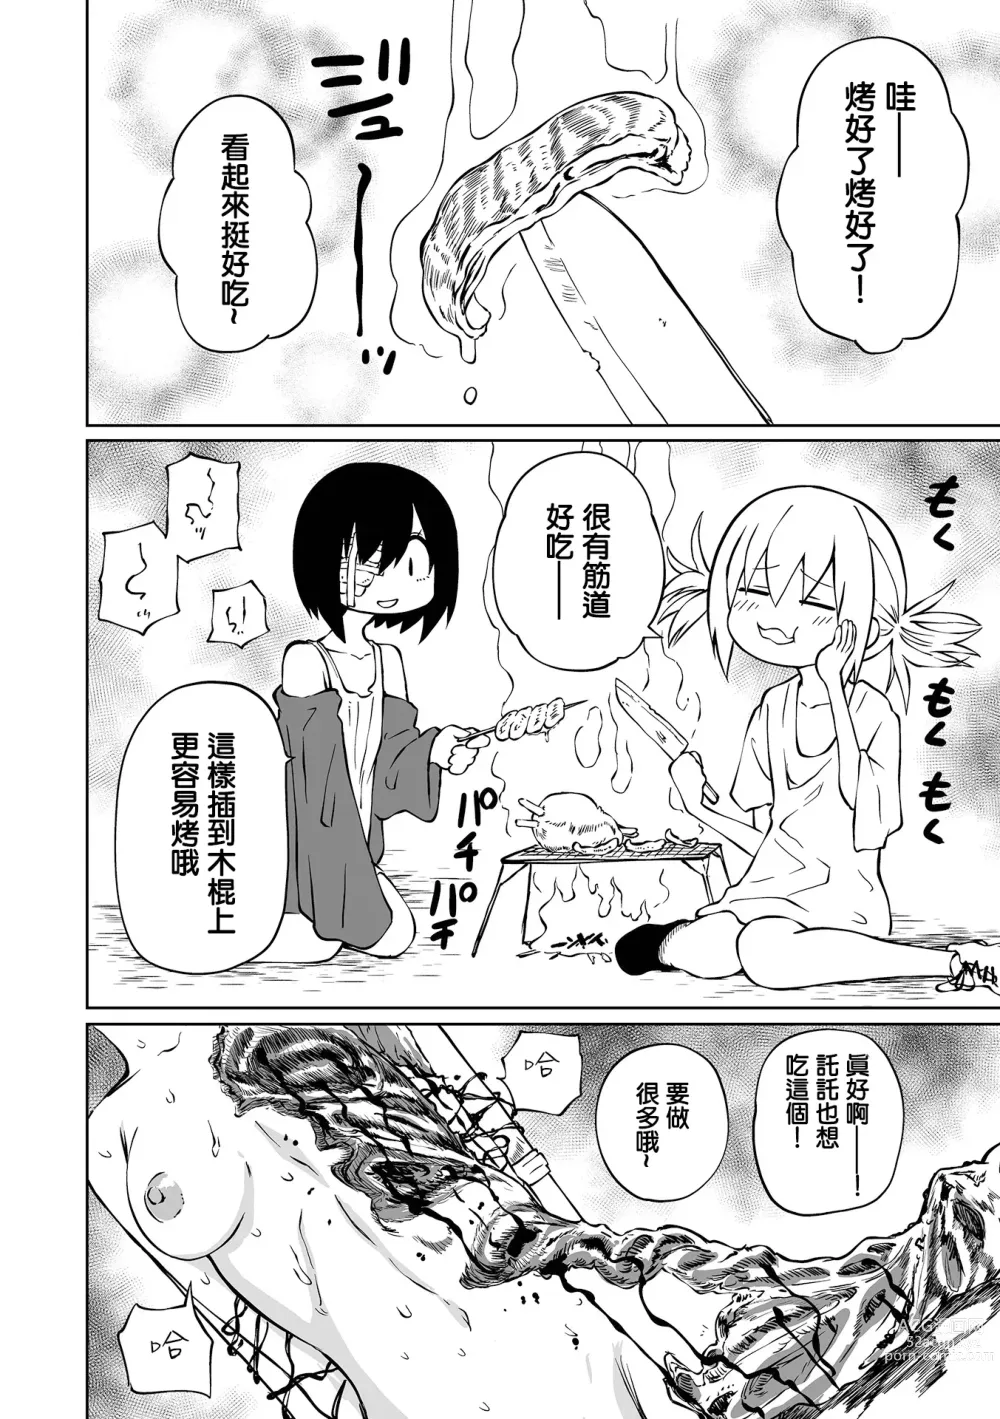 Page 13 of manga 地下生活